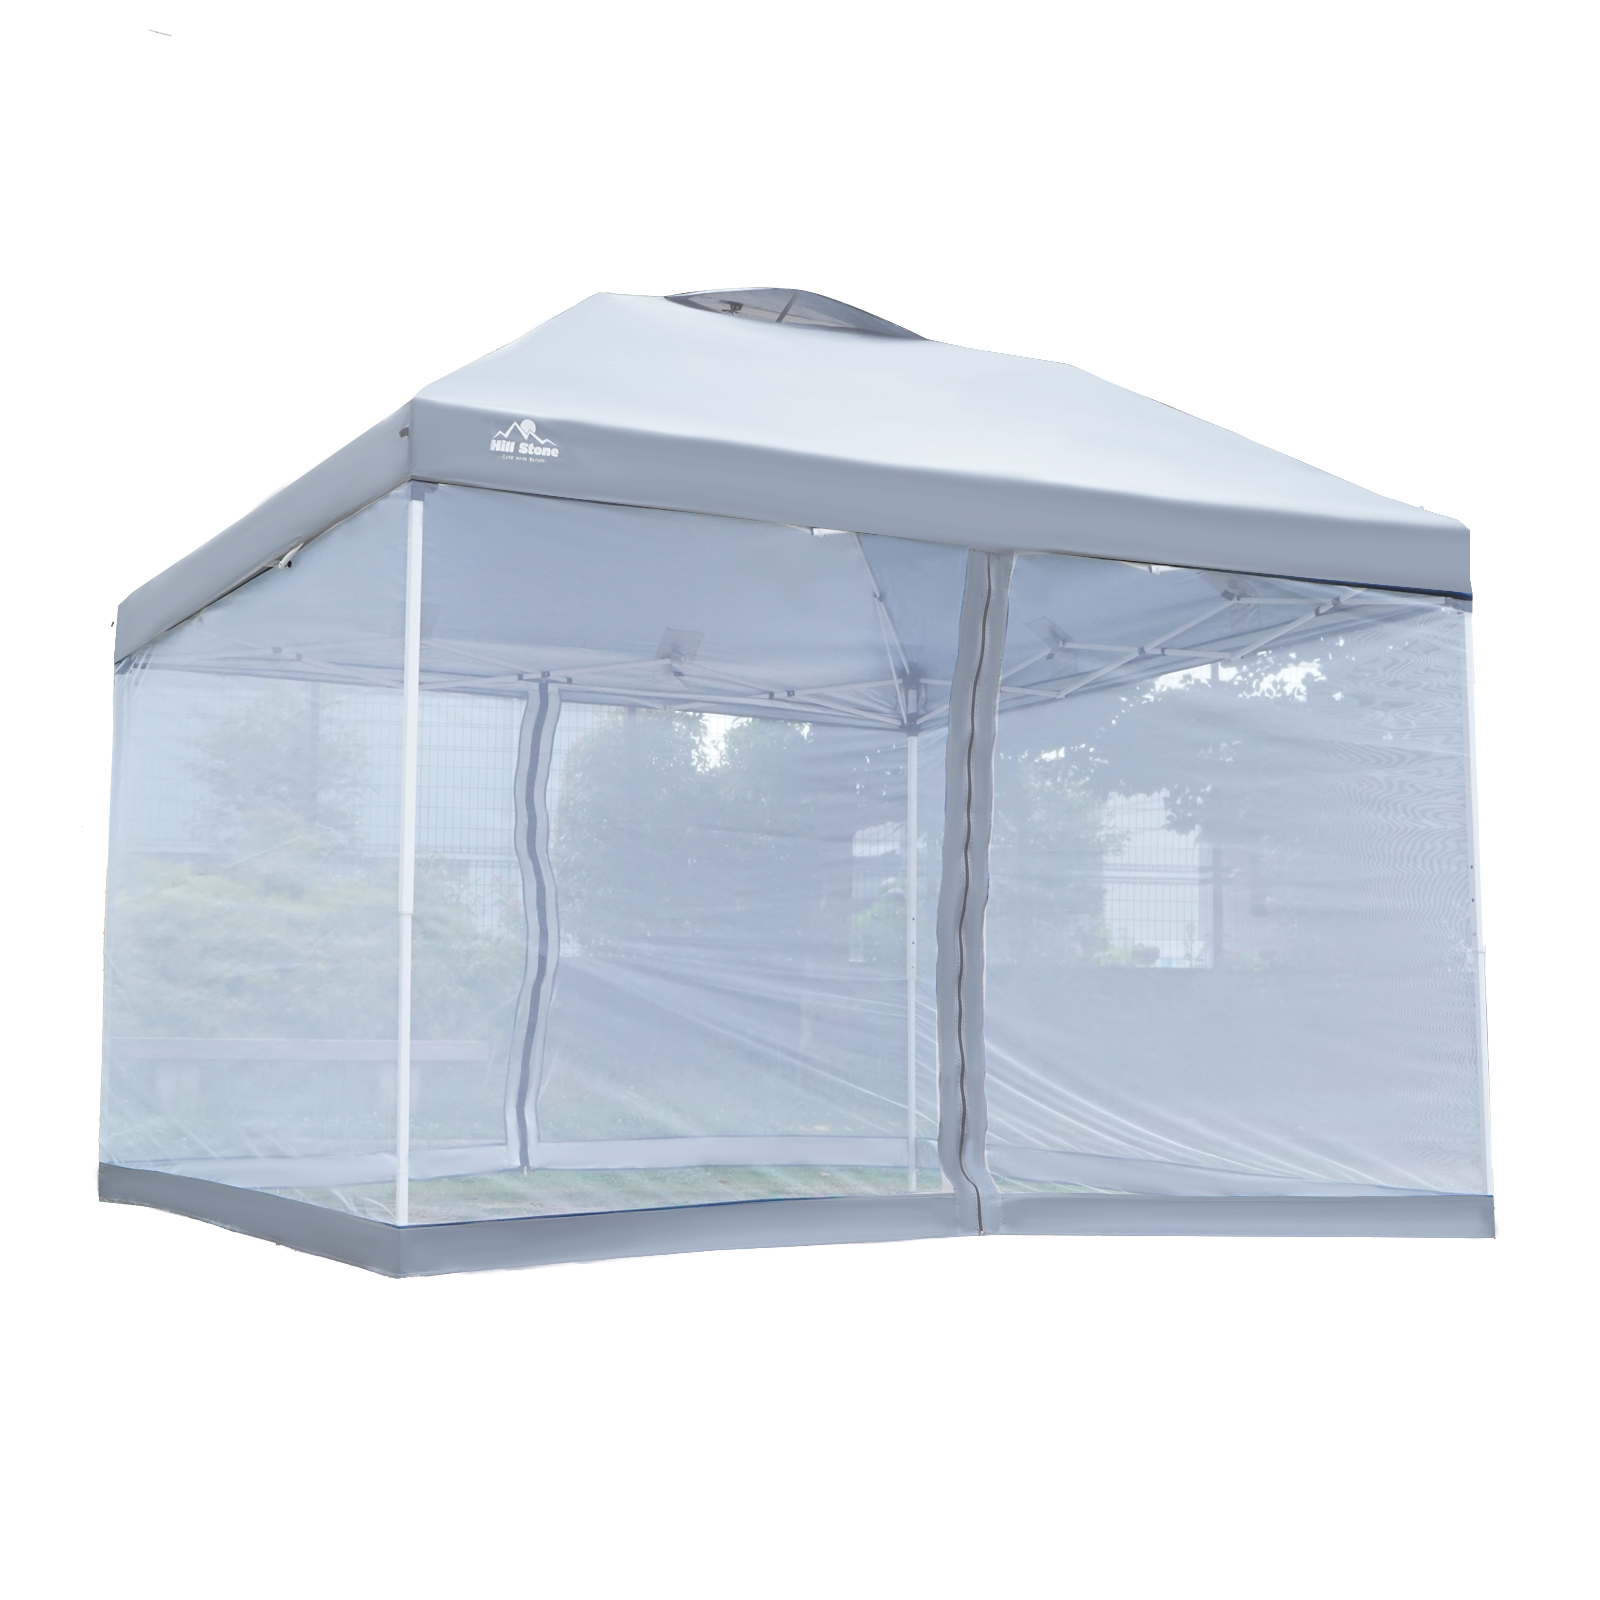 テント キャンプ アウトドア タープ タープテント メッシュ 蚊帳 